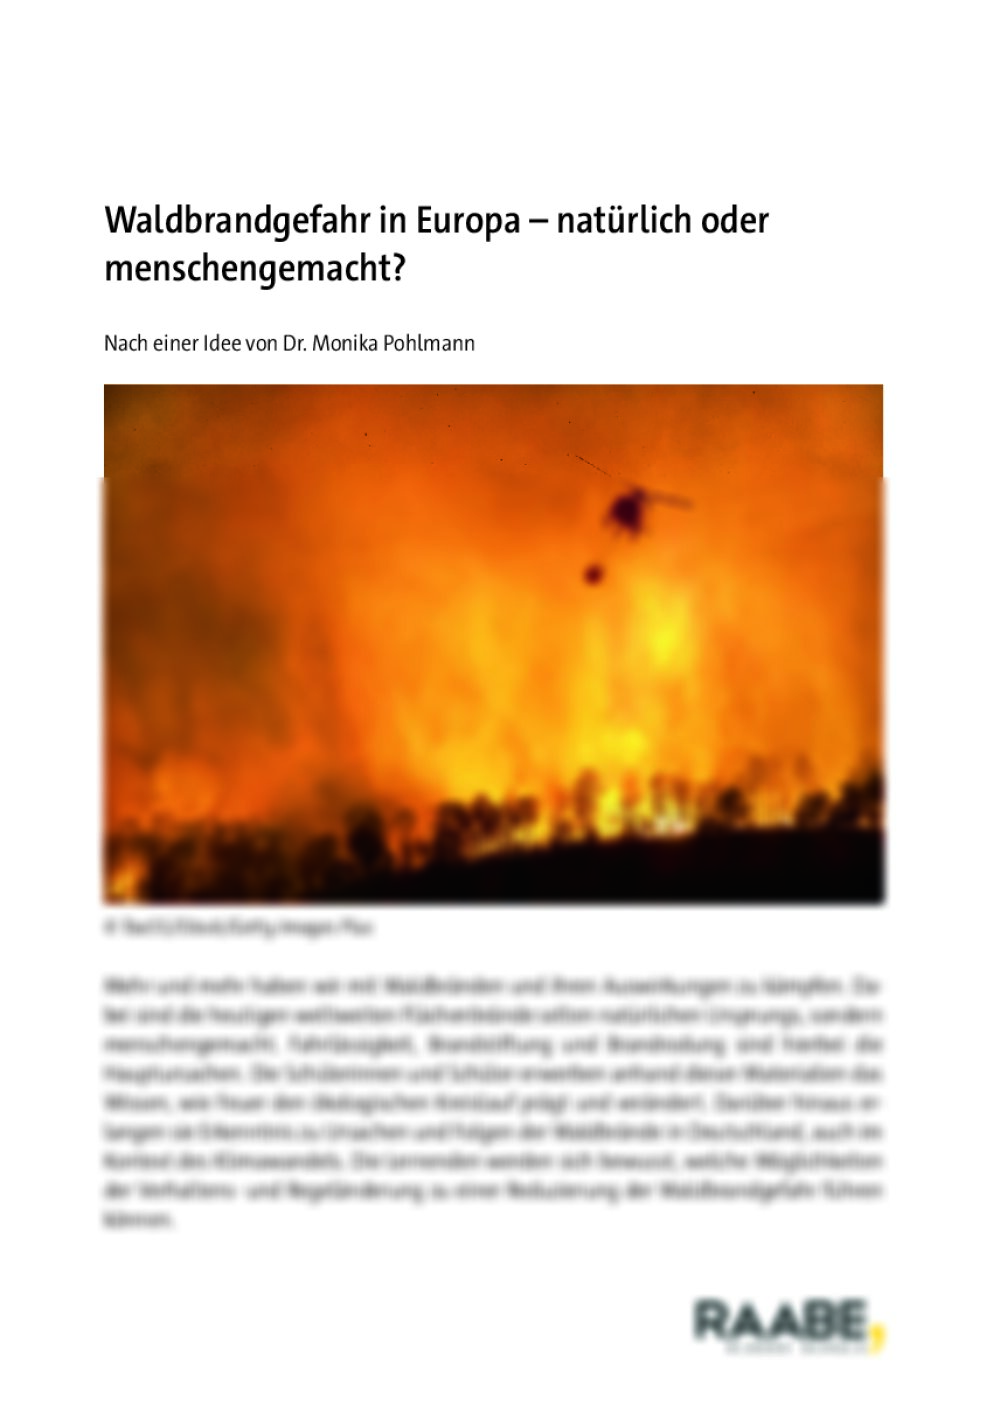 Waldbrandgefahr in Europa - Seite 1